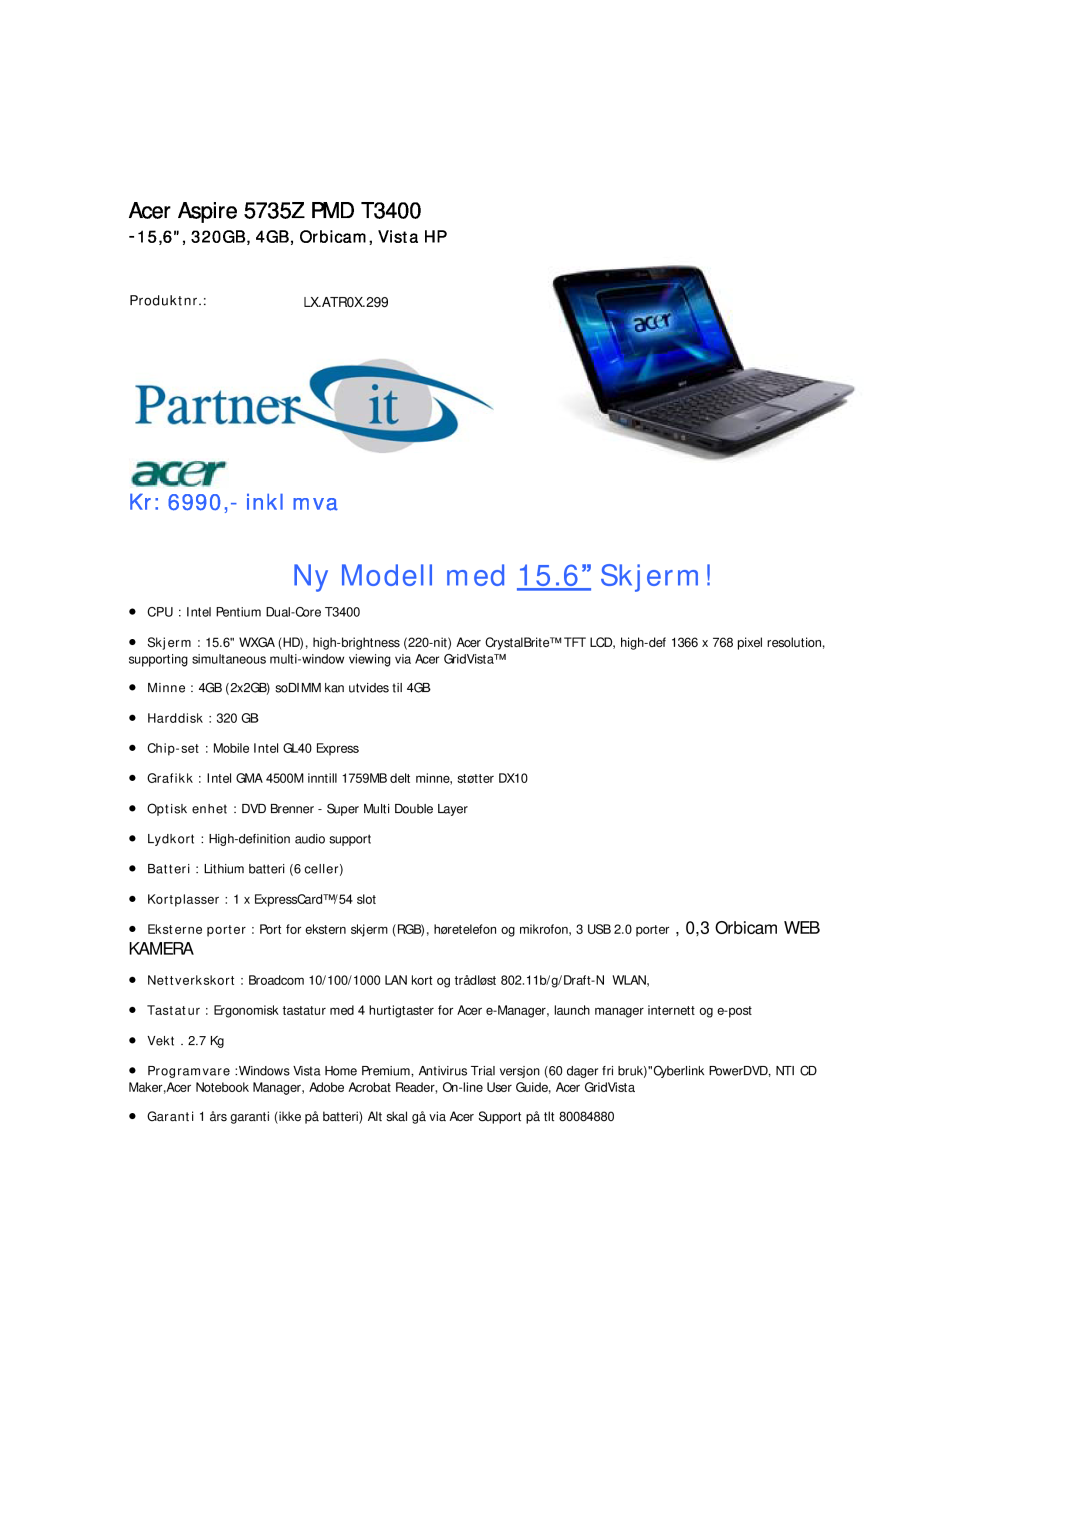 Acer manual Acer Aspire 5735Z PMD T3400, Kr 6990,- inkl mva, 15,6, 320GB, 4GB, Orbicam, Vista HP, Produktnr.LX.ATR0X.299 